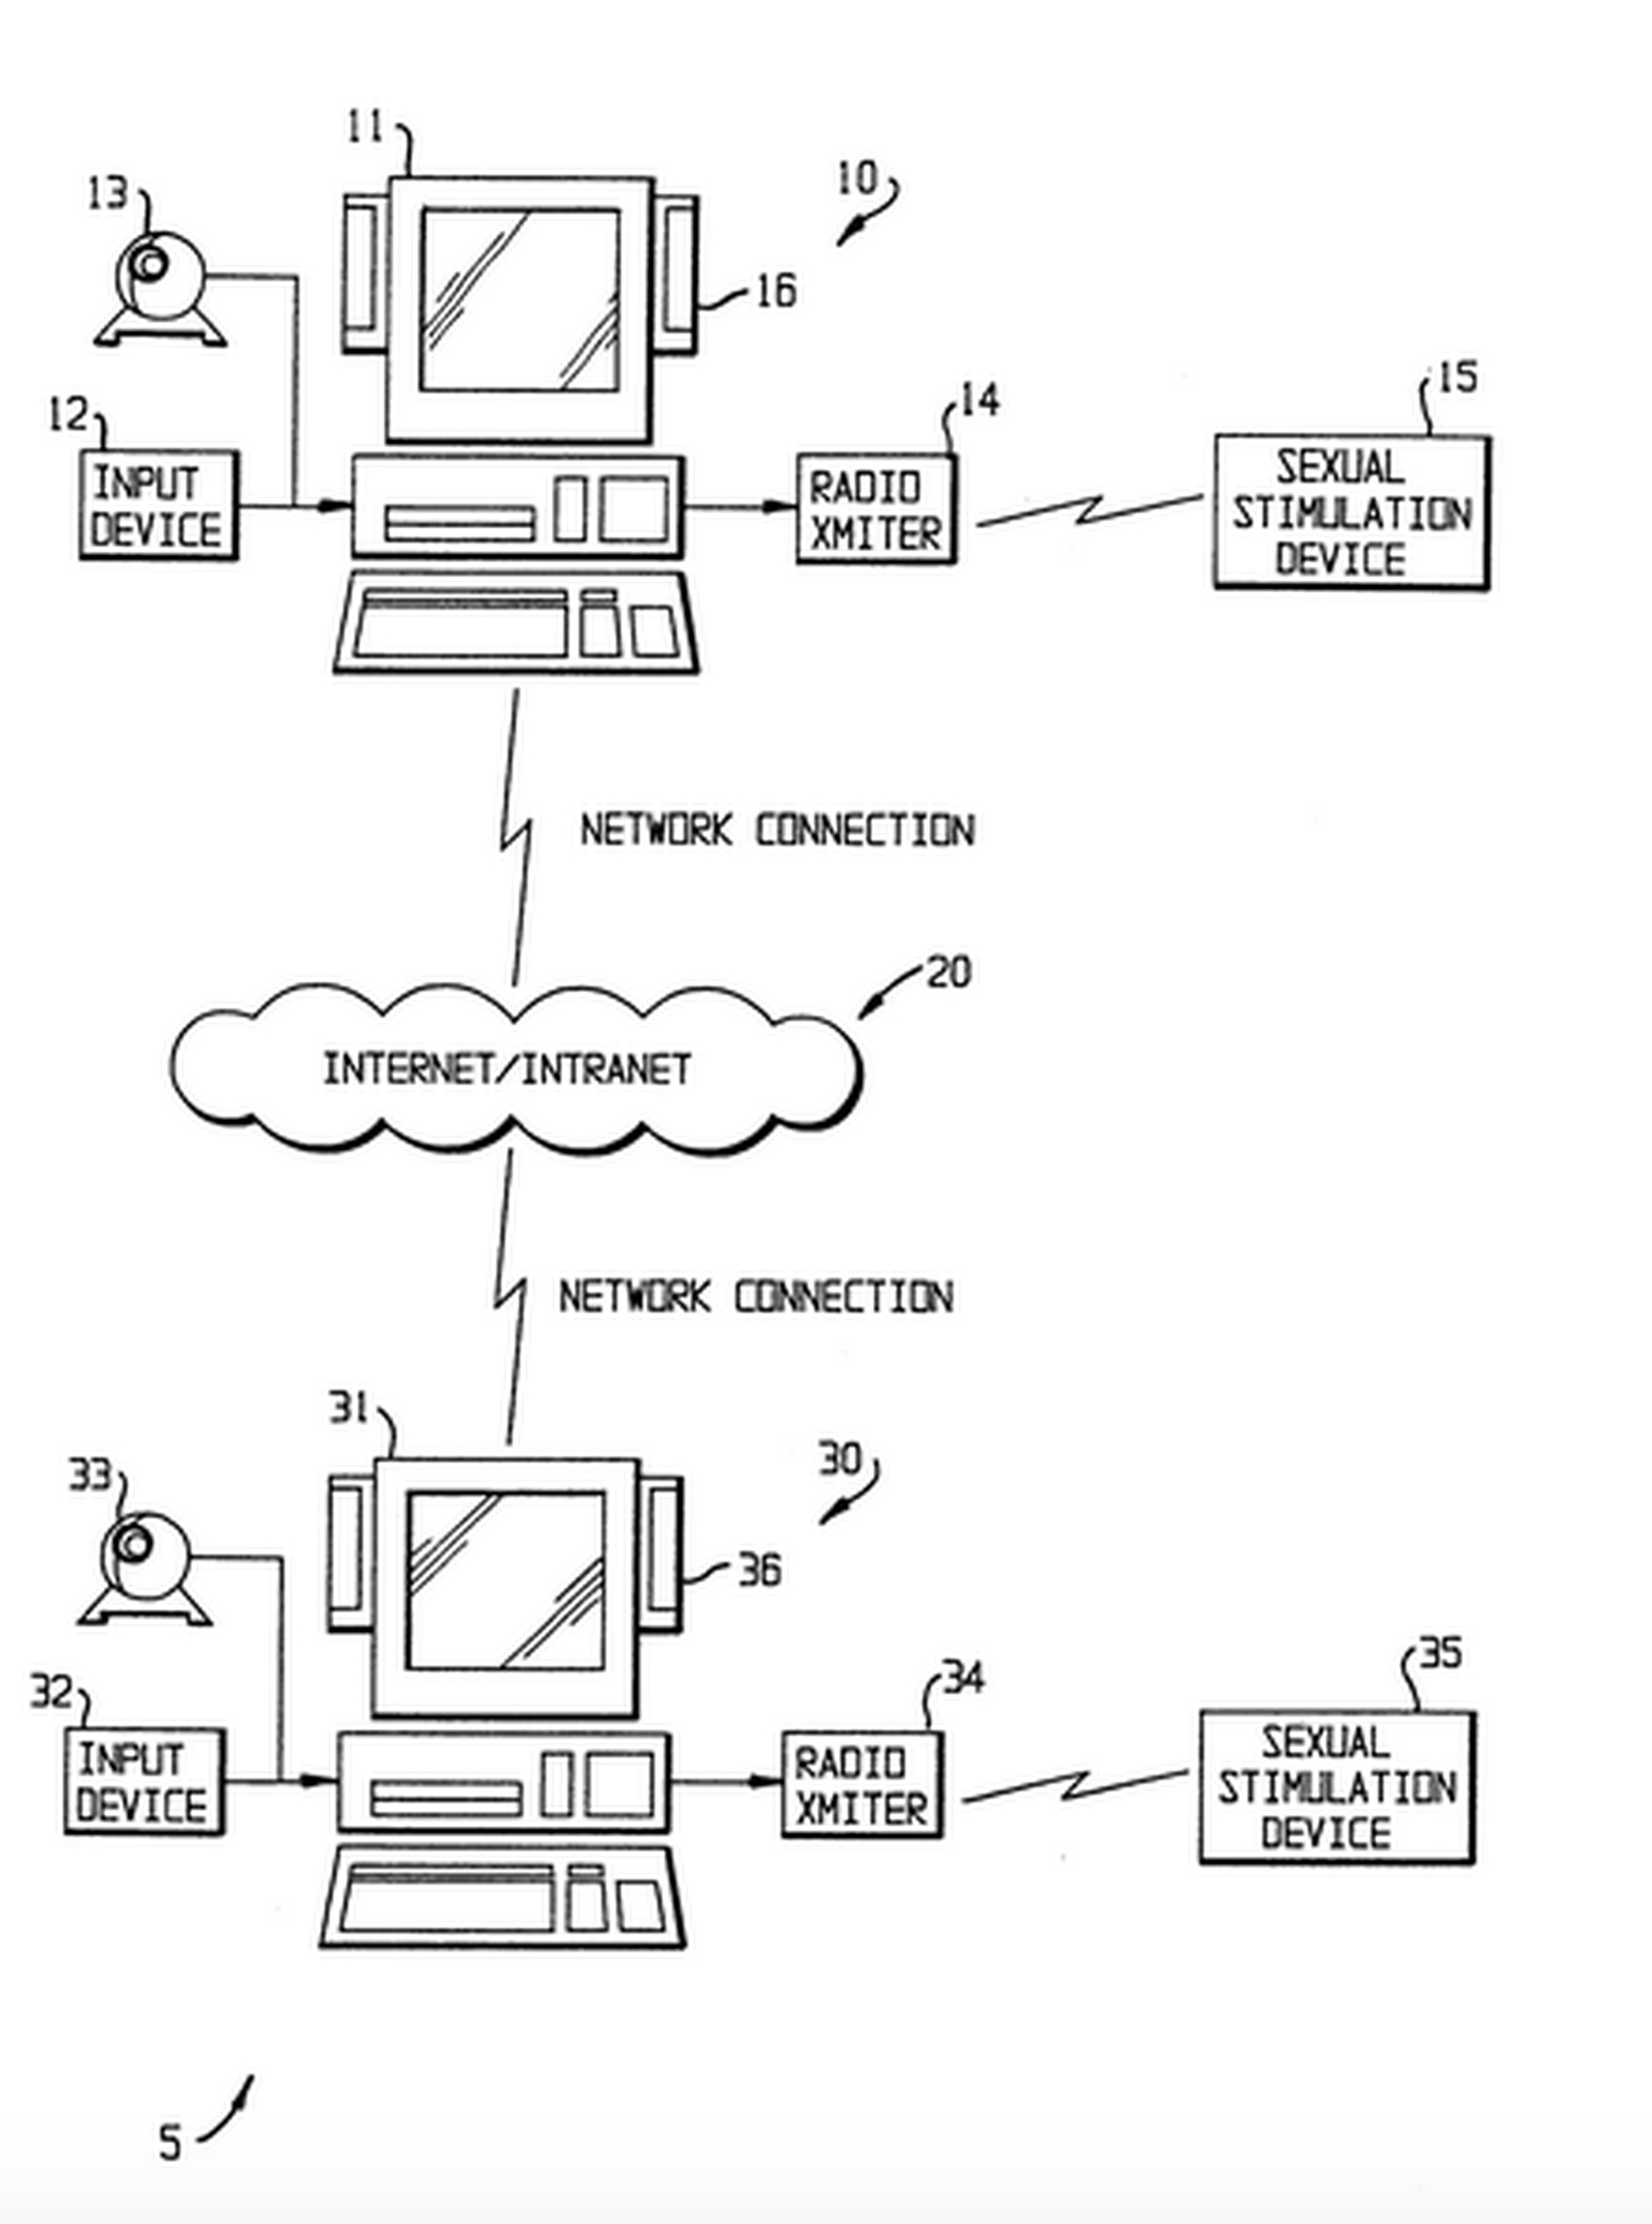 patent diagram 1